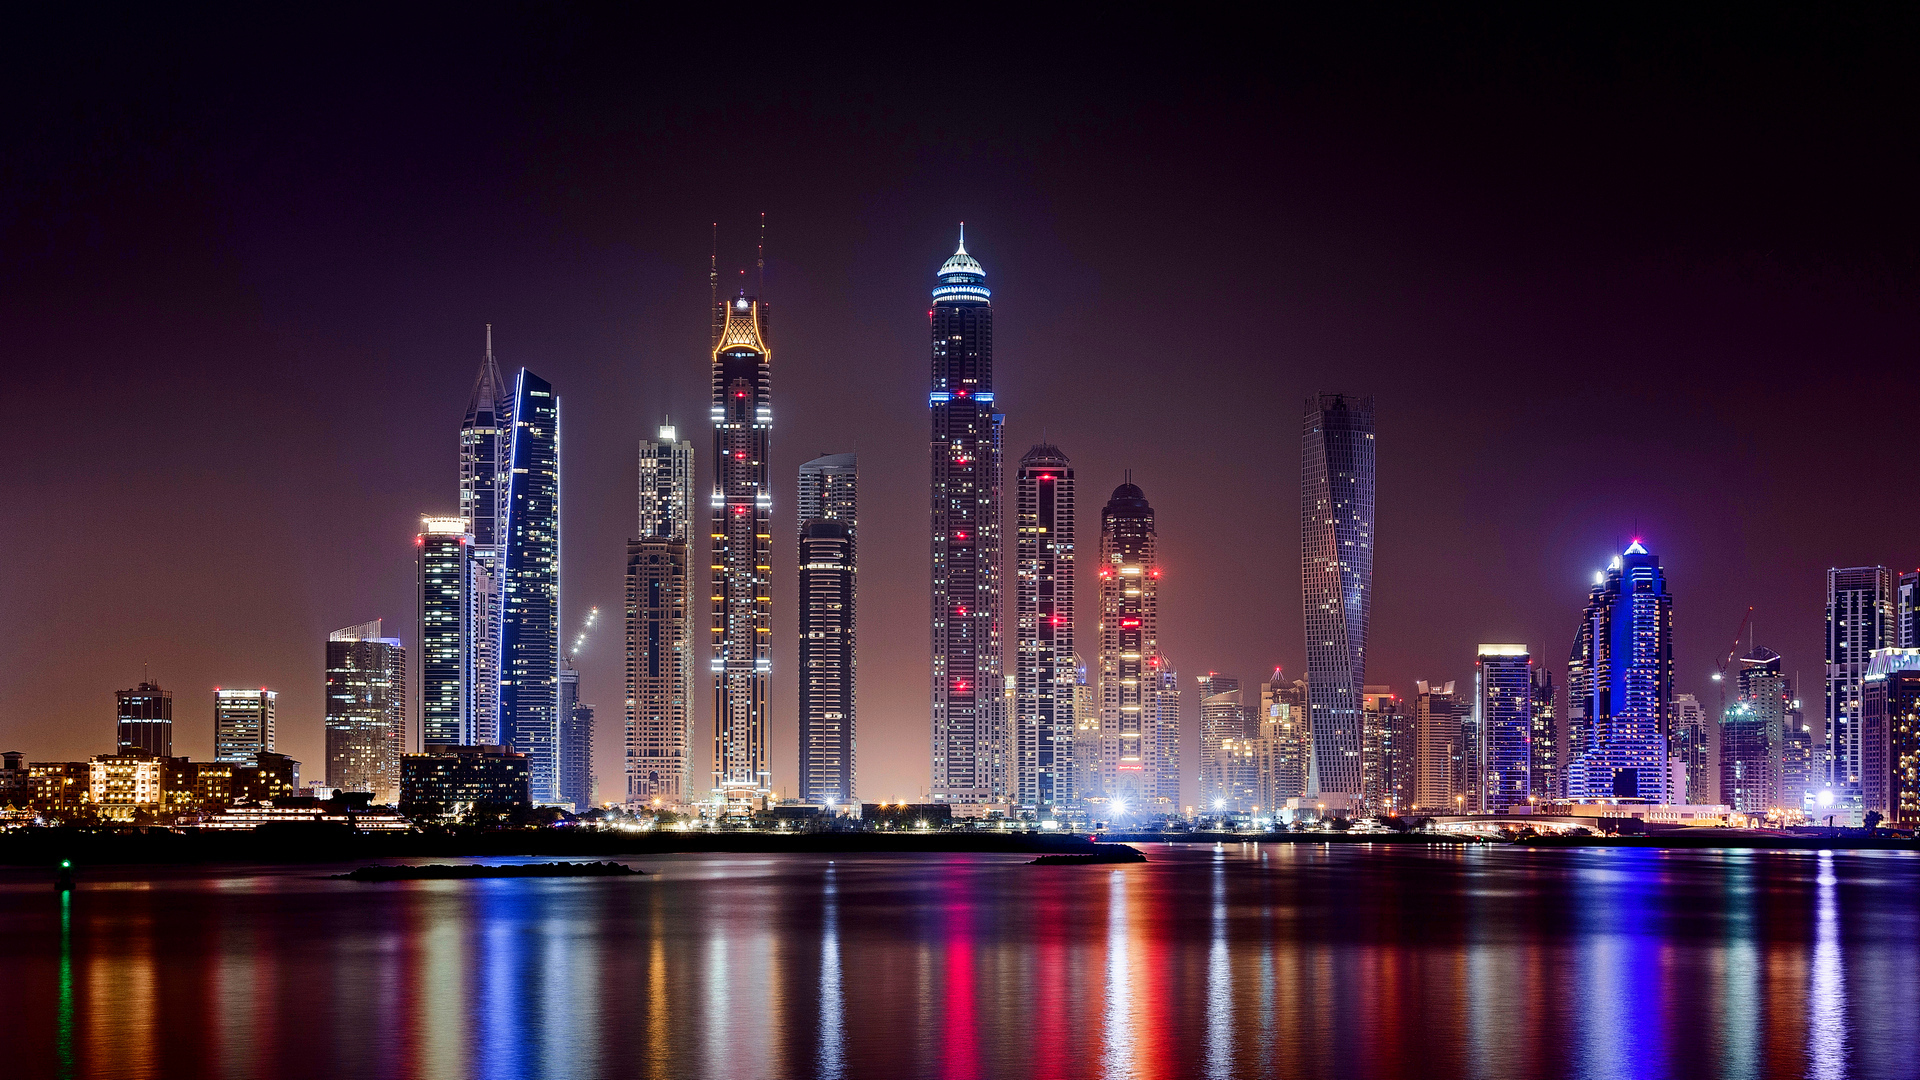 skyline-night-Marina-buildings-Dubai-skyscrapers-2013.jpg